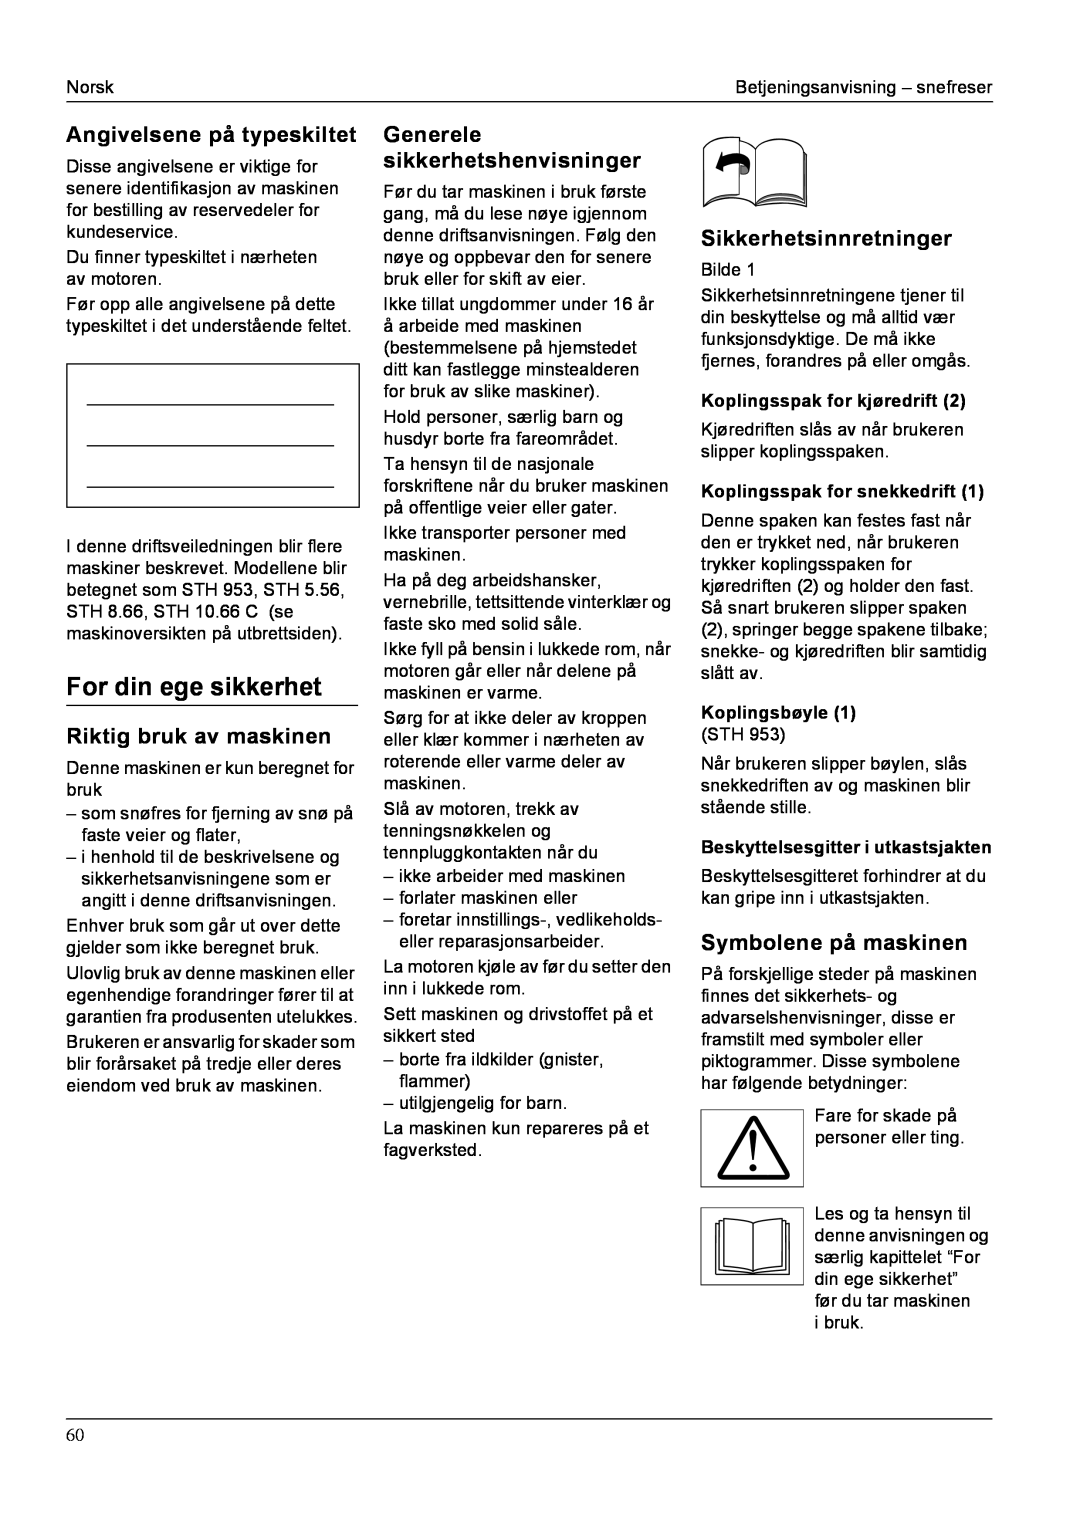 Karcher STH 8.66 manual For din ege sikkerhet, Angivelsene på typeskiltet, Riktig bruk av maskinen, Sikkerhetsinnretninger 